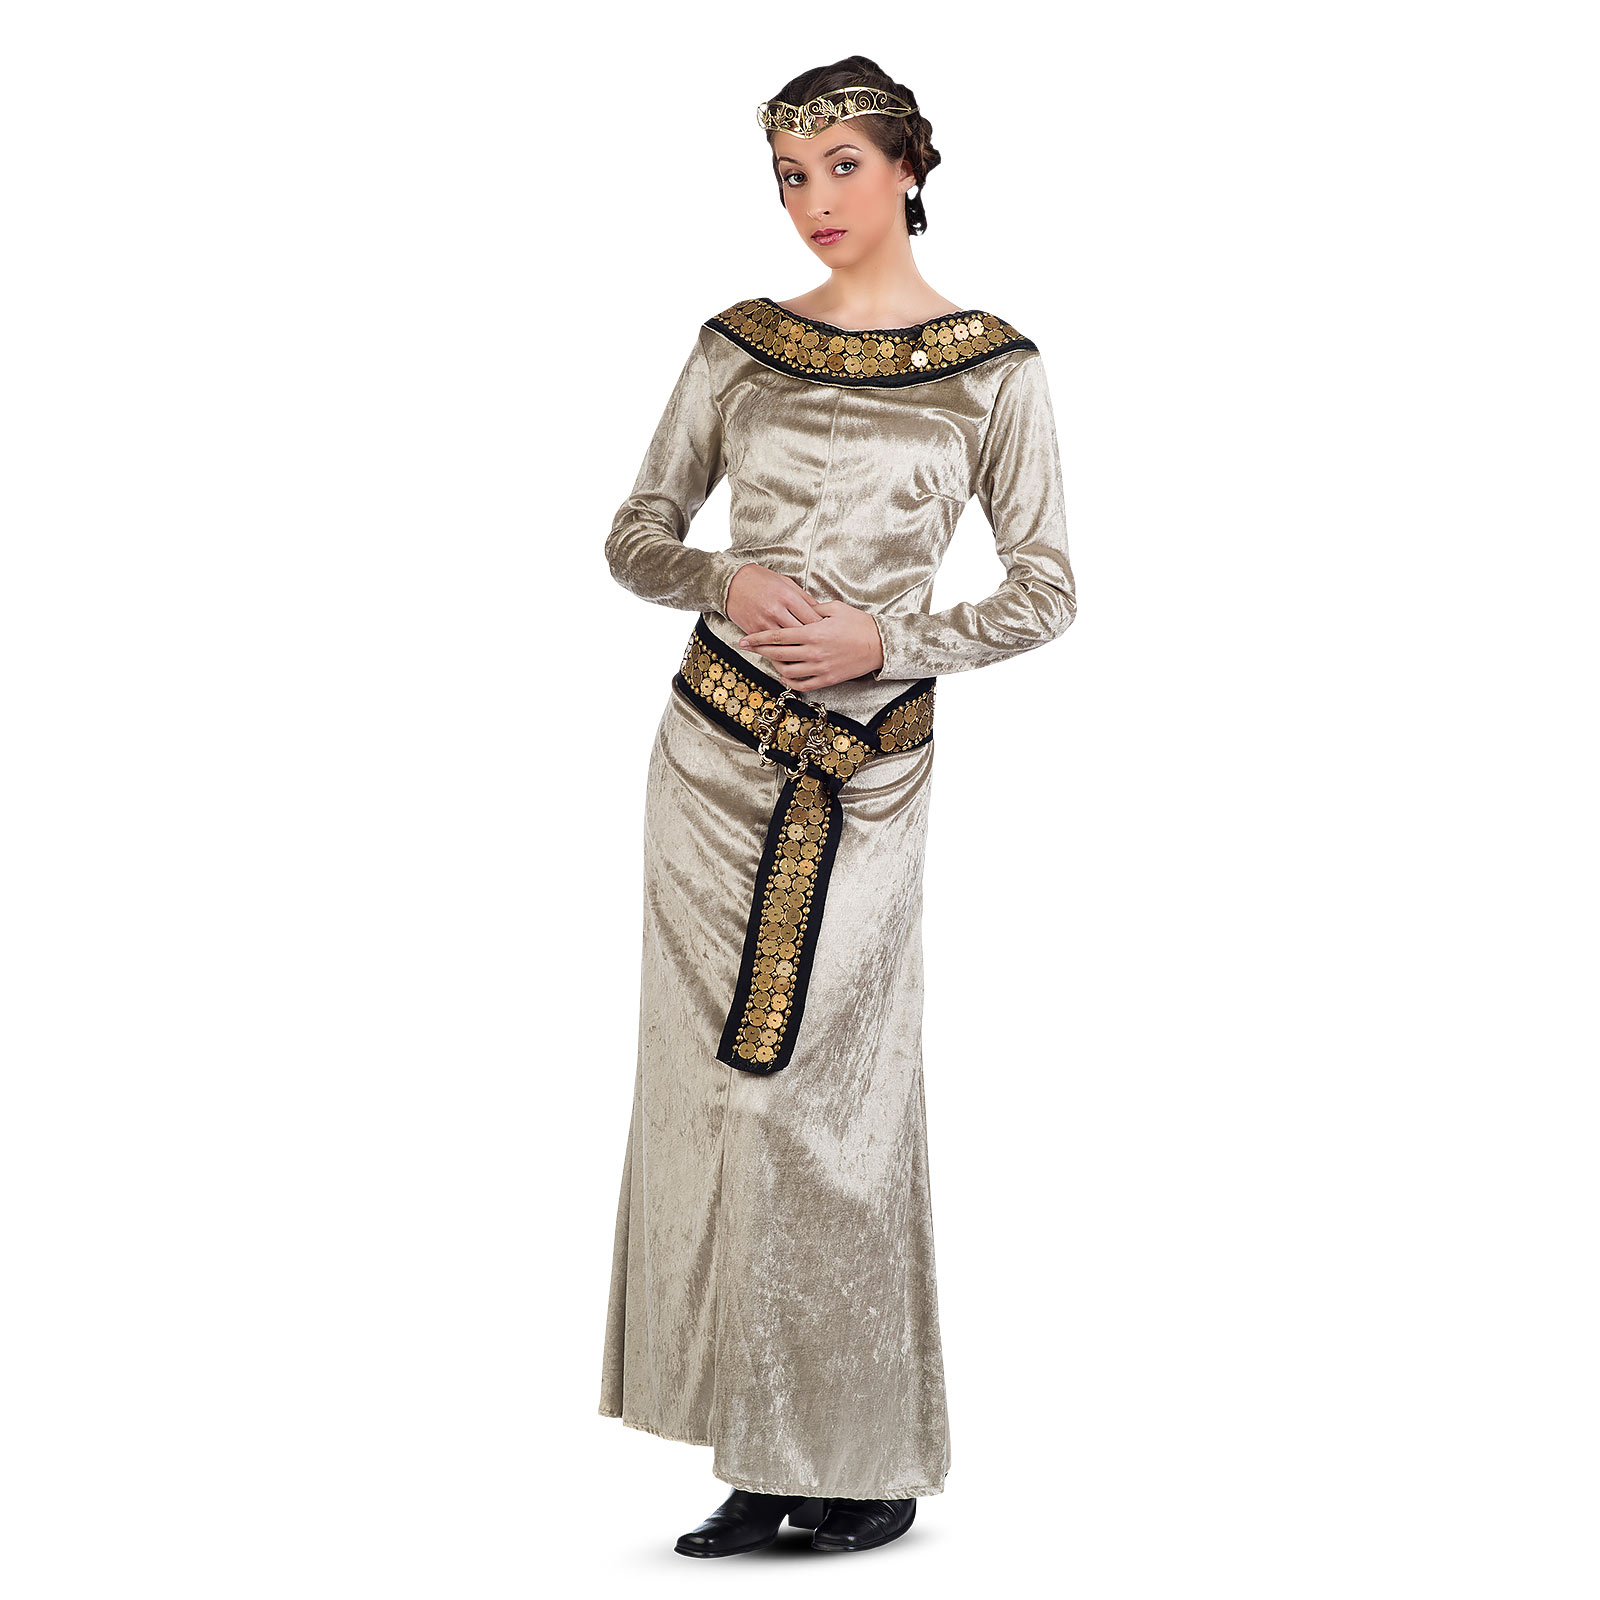 Mittelalterliche Prinzessin - Kostüm